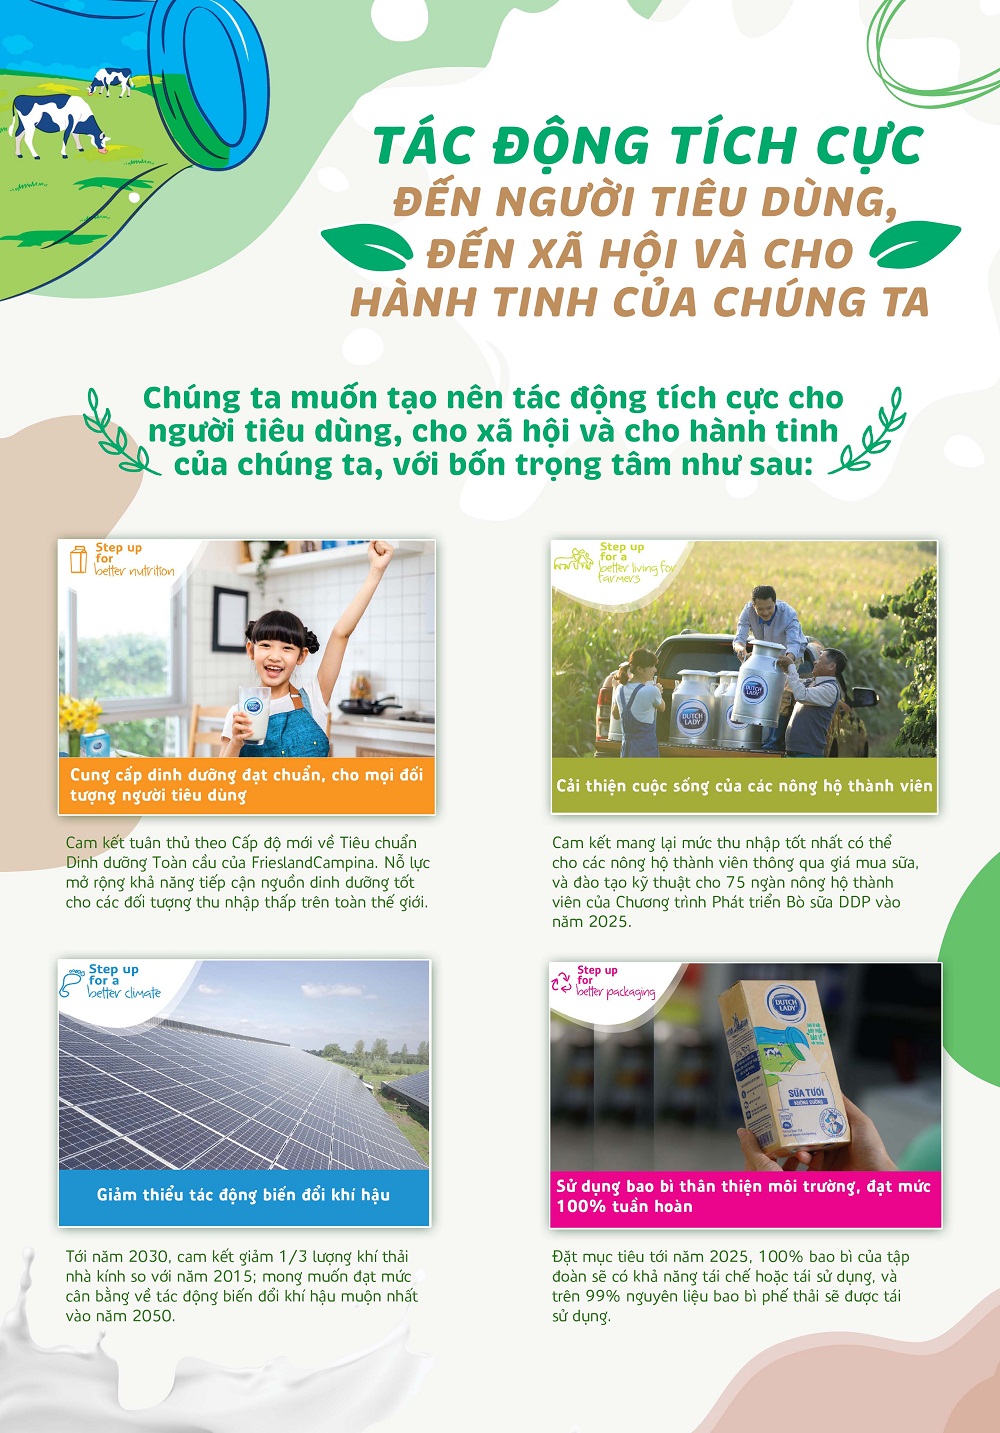 Tập đoàn FrieslandCampina Việt Nam công bố chiến lược PTBV với 4 trọng tâm chính hướng đến việc cung cấp nguồn dinh dưỡng đạt chuẩn và nuôi dưỡng hành tinh tốt đẹp hơn